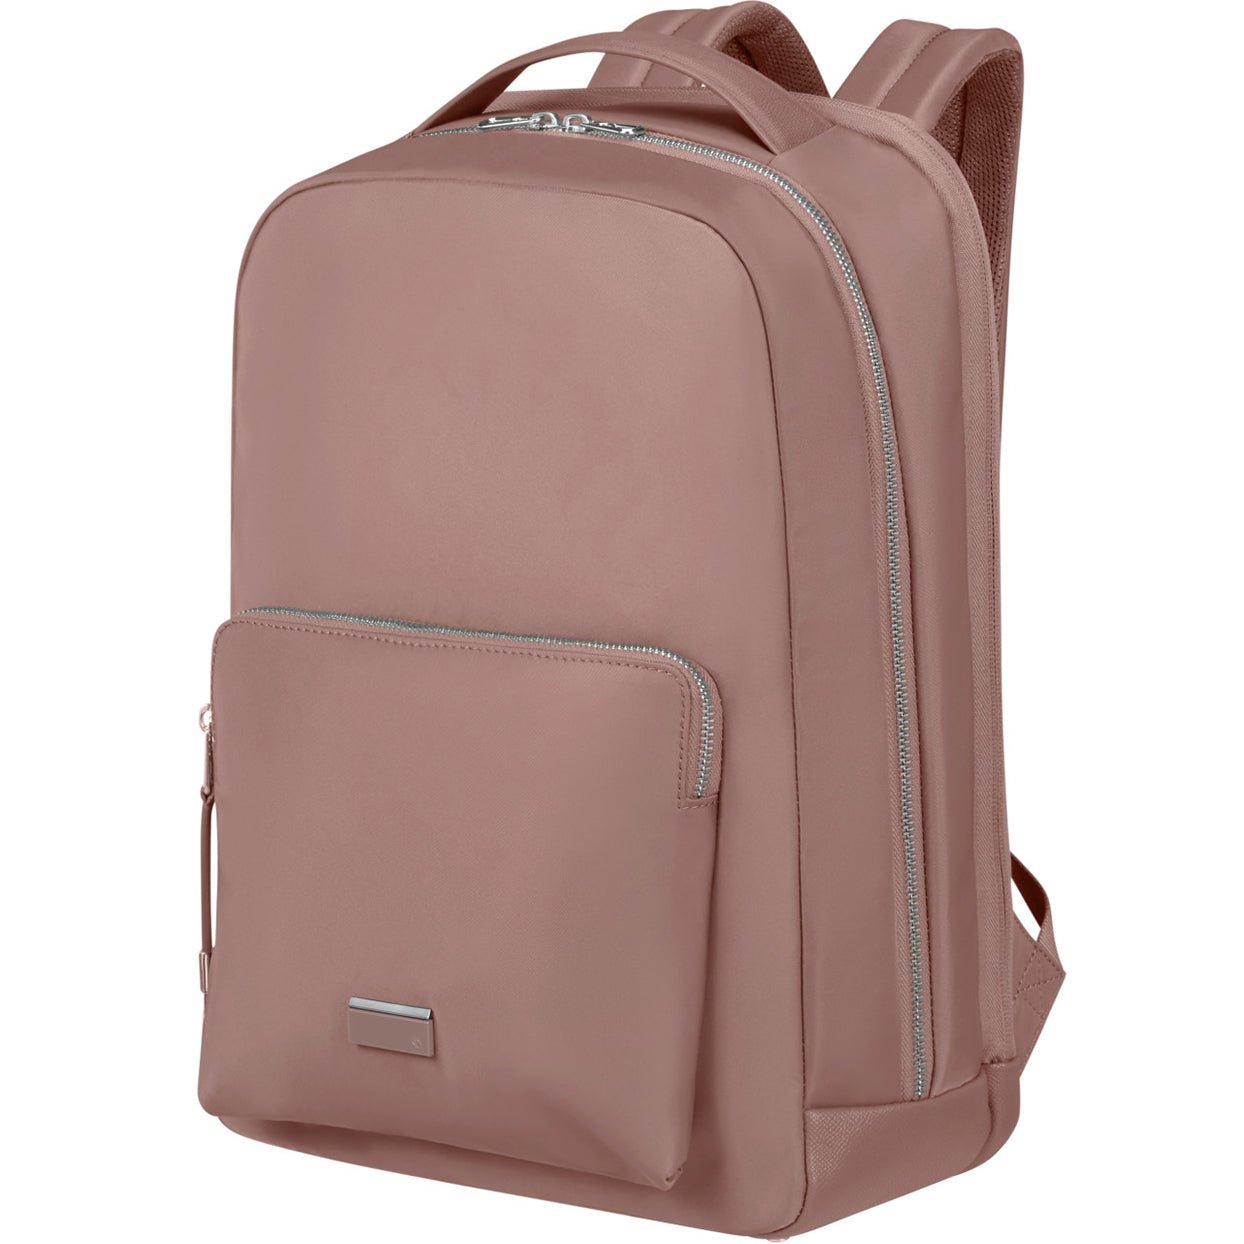 Samsonite Be-Her Backpack 40 cm - Antique Pink